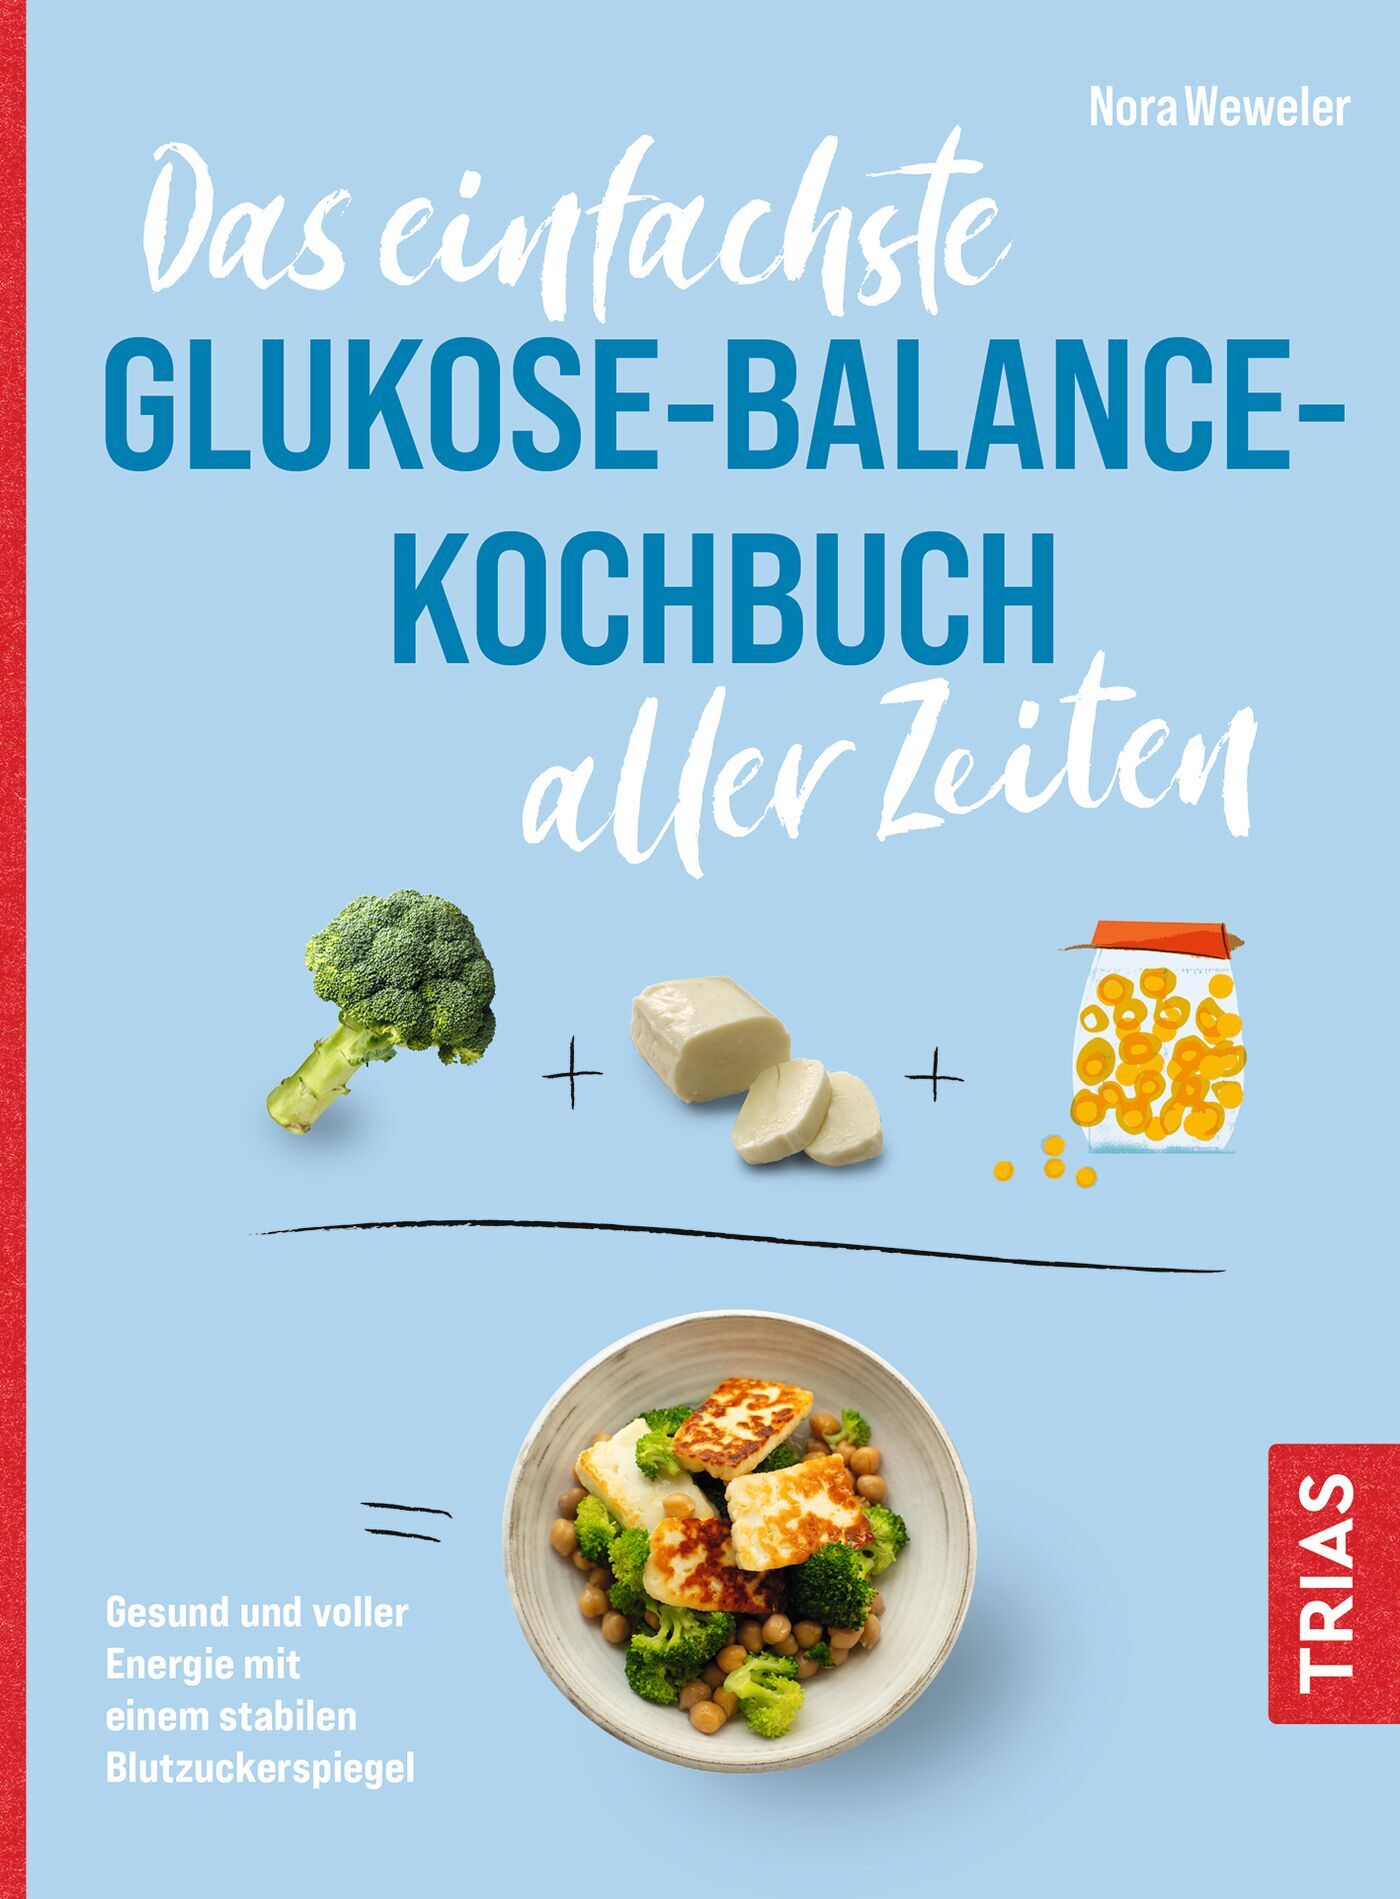 Das einfachste Glukose-Balance-Kochbuch aller Zeiten, 9783432119465